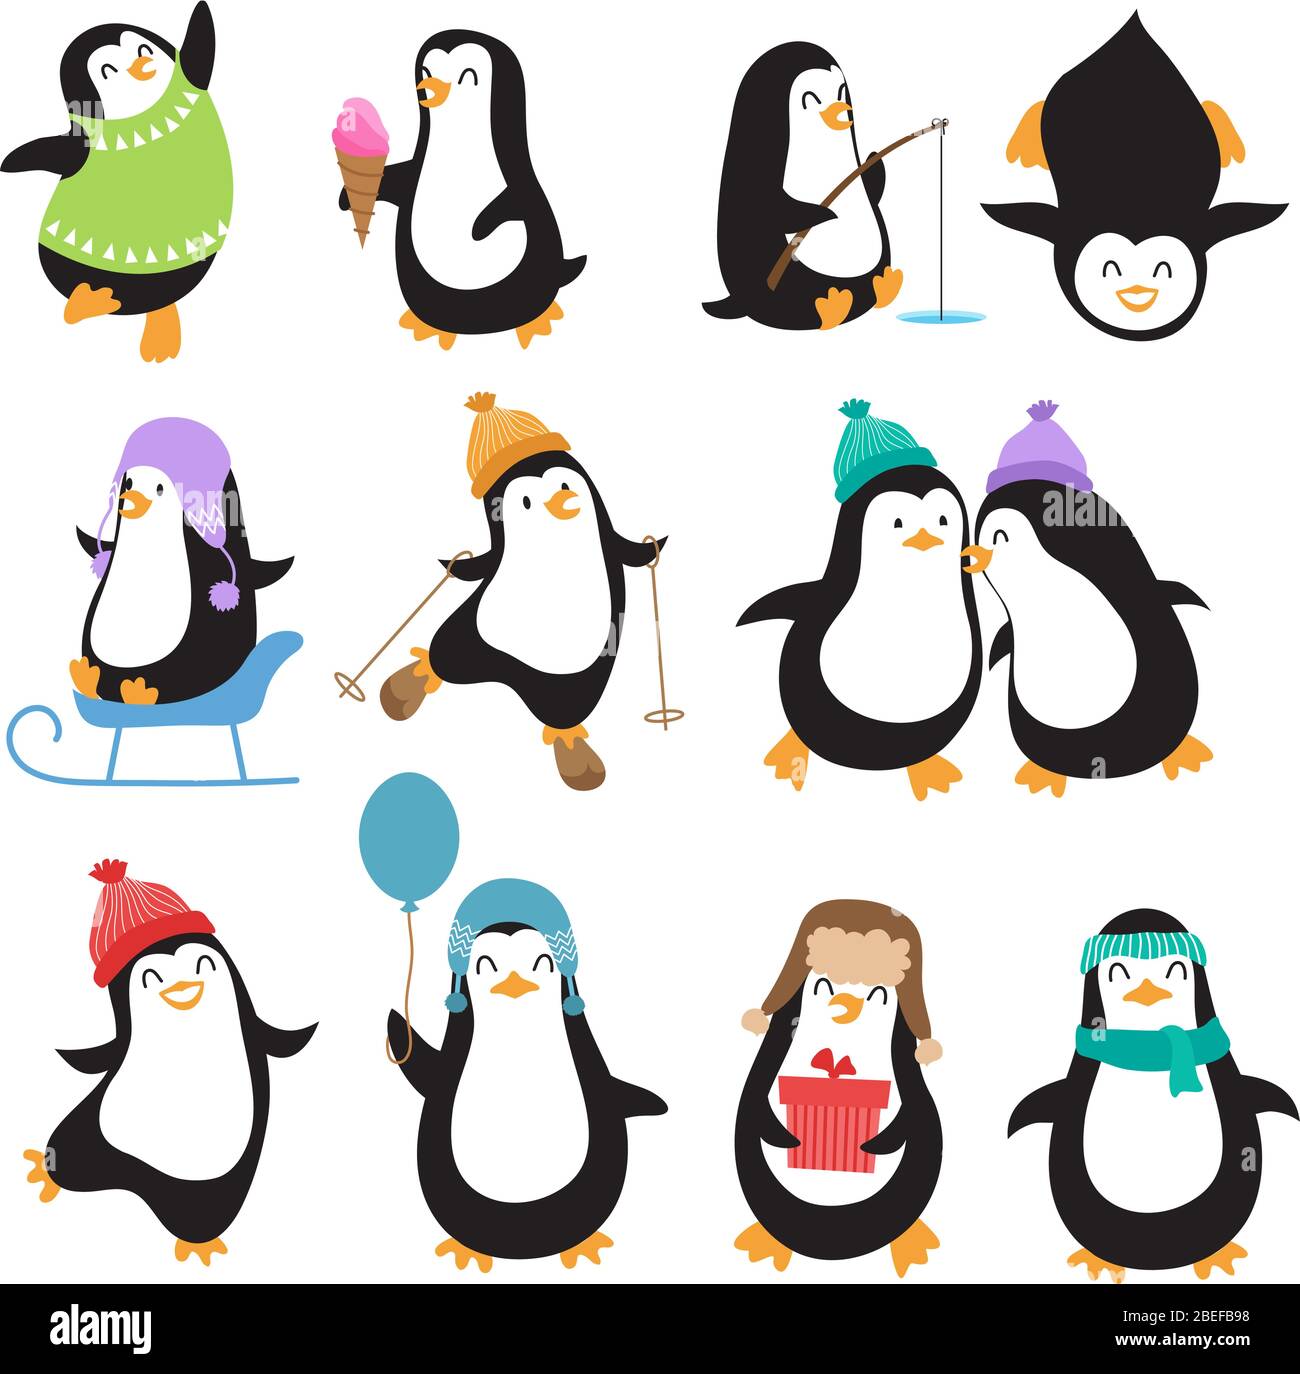 Personnages vectoriels de pingouins de noël bizarres. Ensemble d'animaux de pingouin avec glace et illustration de pêche Illustration de Vecteur